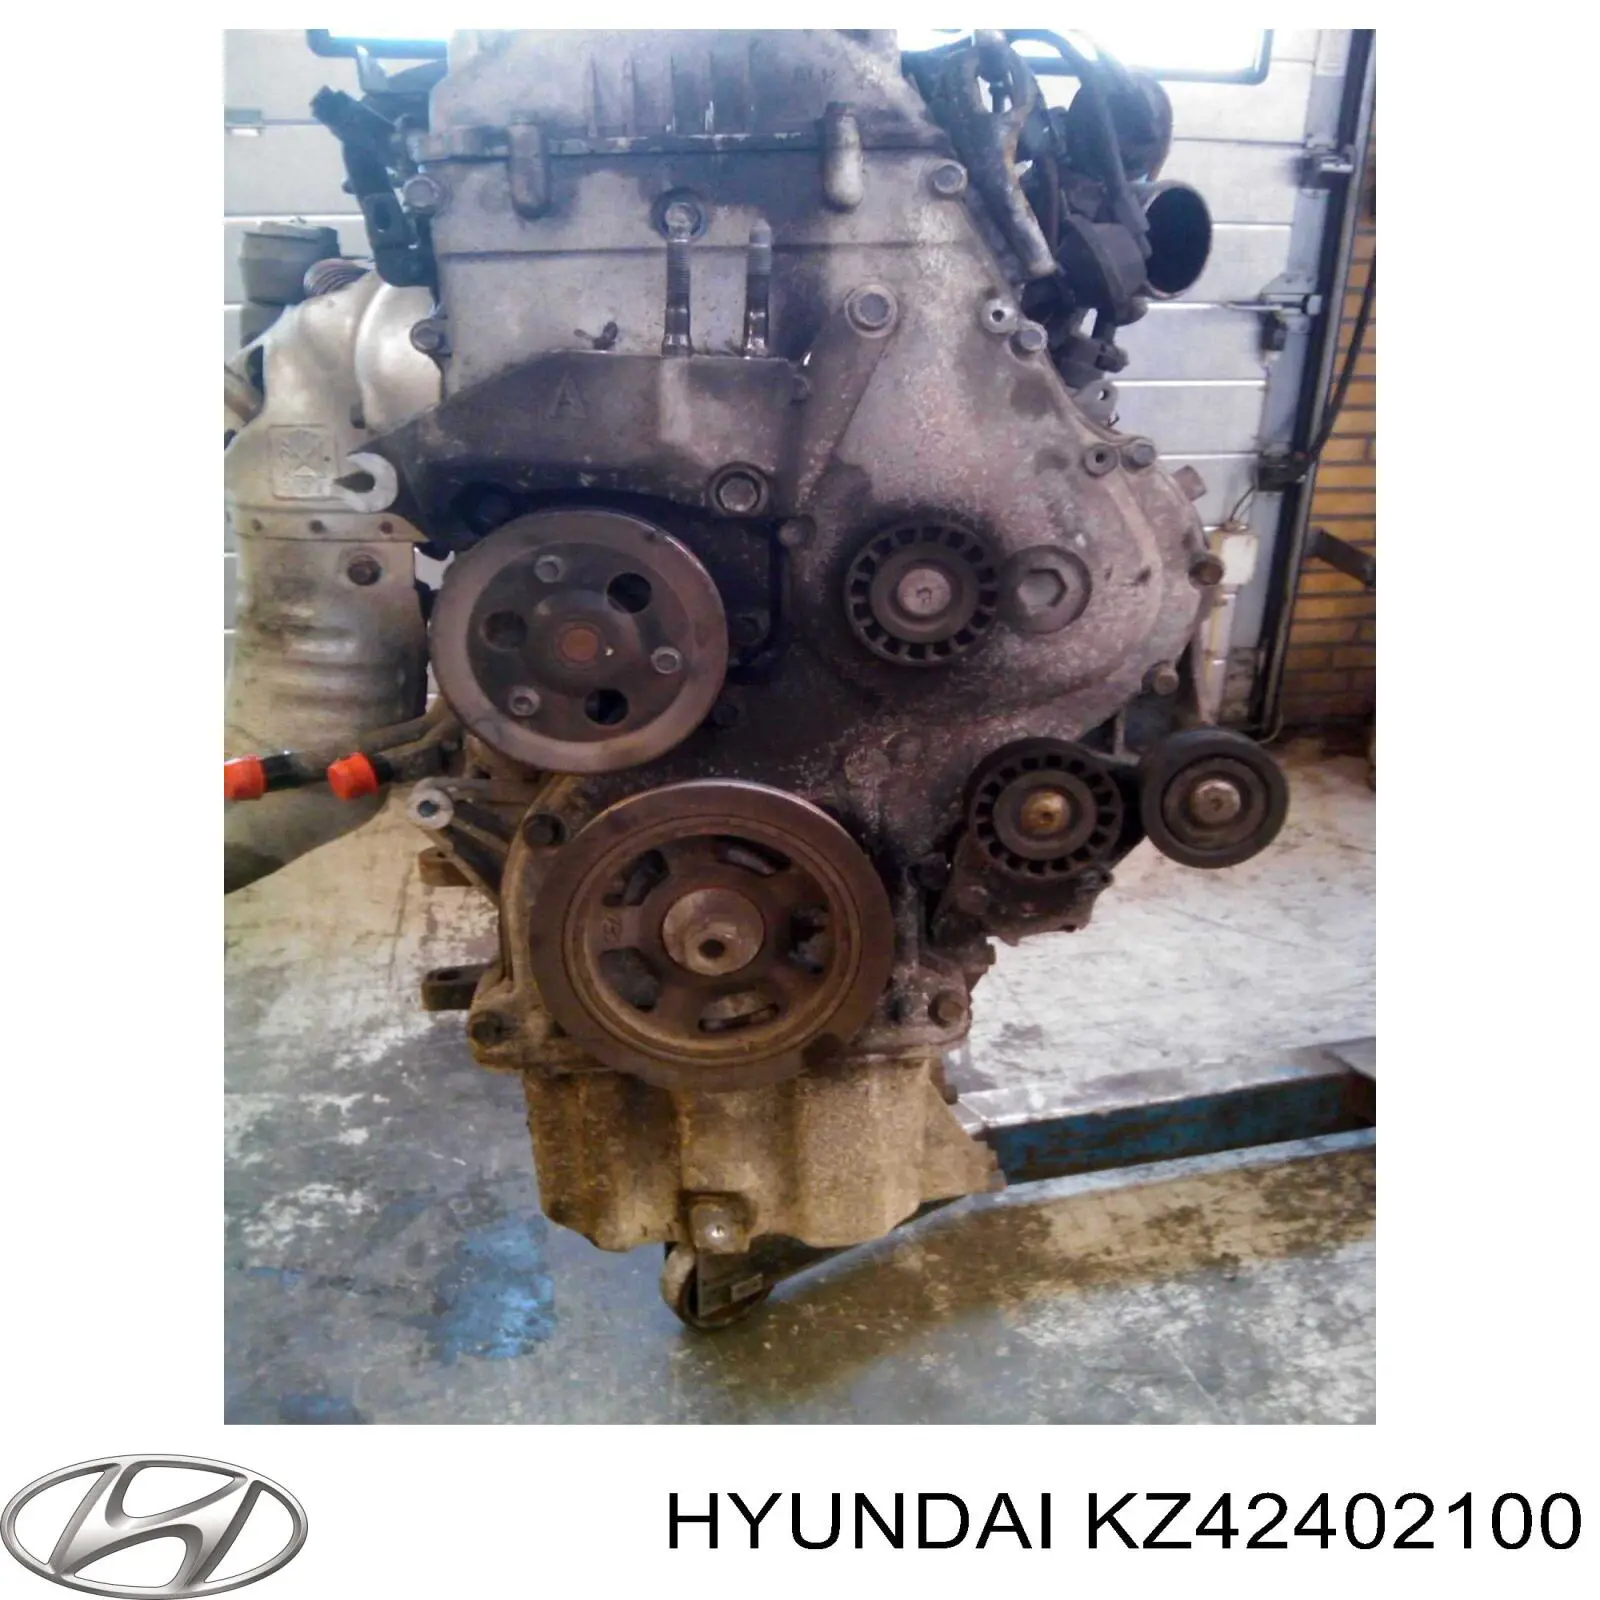 Motor completo para Hyundai I10 (PA)